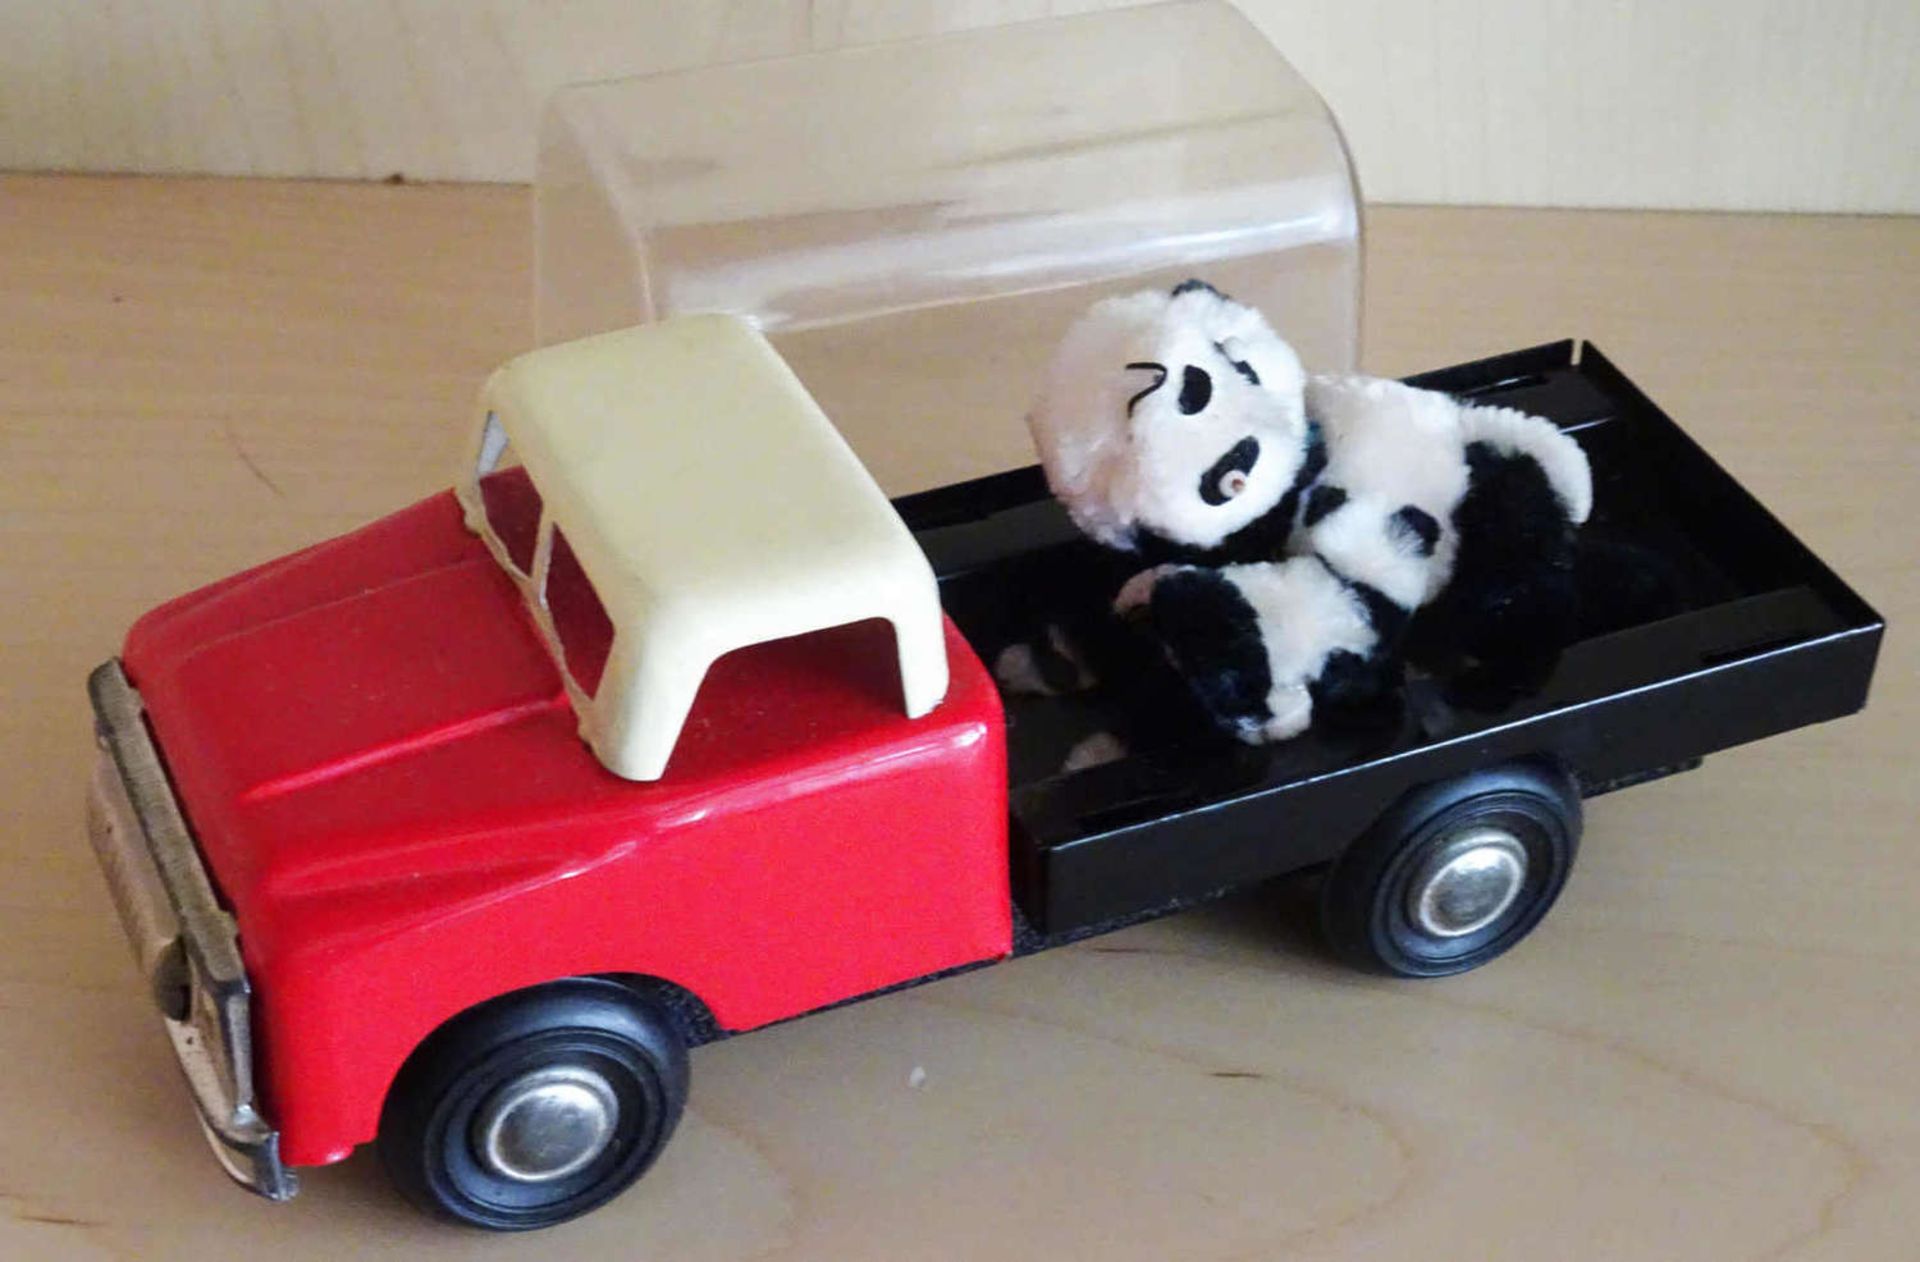 1 Blech LKW mit Aufsatz, Panda Bär mit Jungen. China. Diese beweglich beim fahren. Mechanik intakt.1